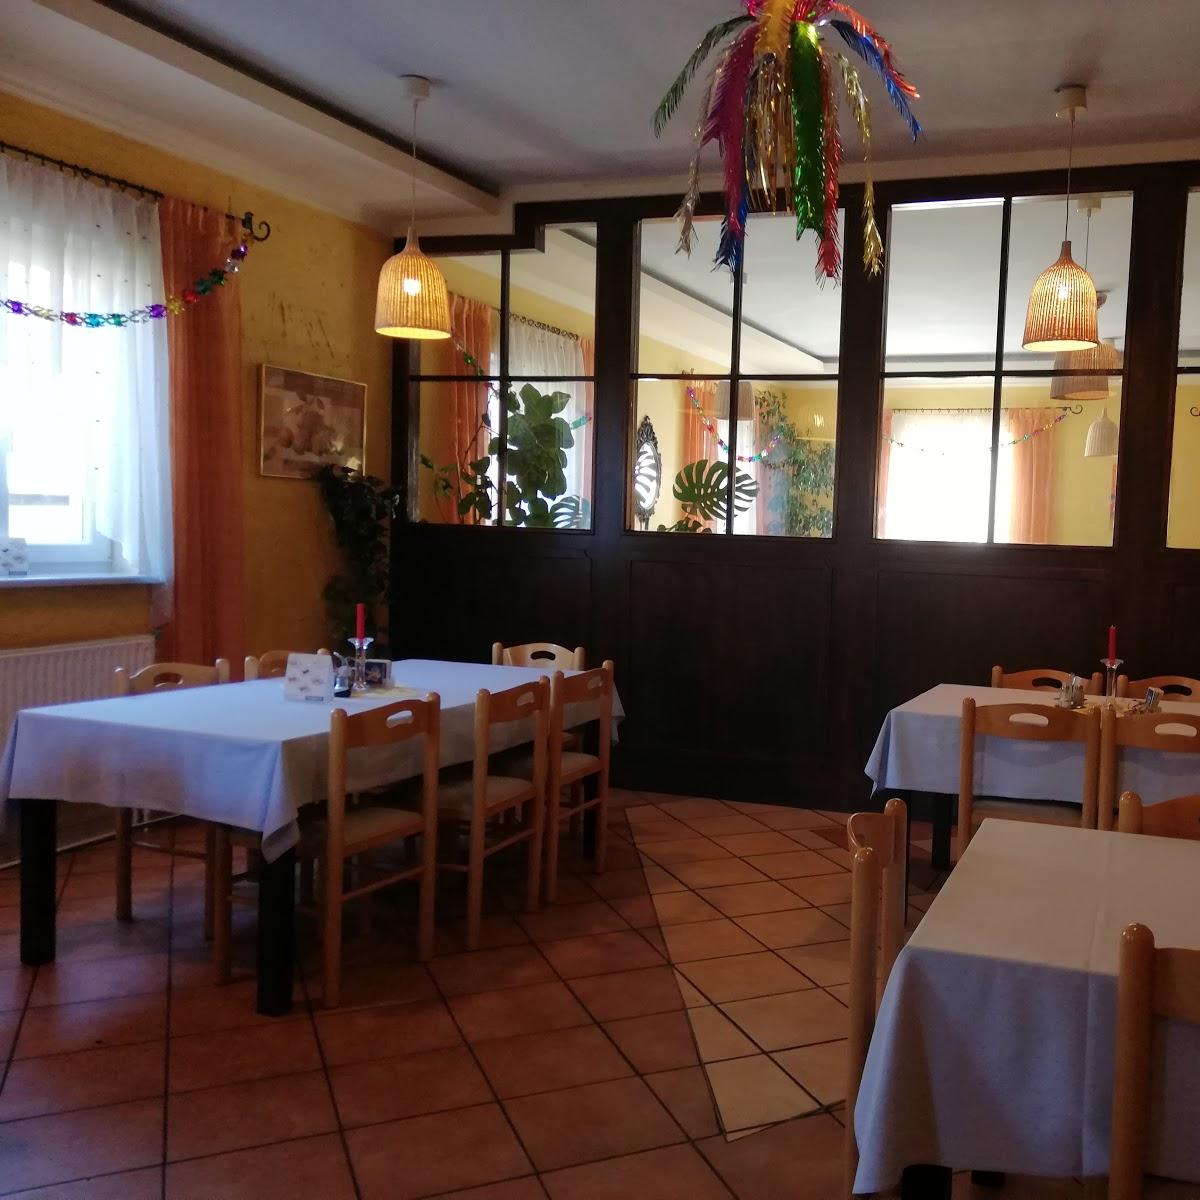 Restaurant "Café-Pizzeria Don Giovanni" in Grimmenstein